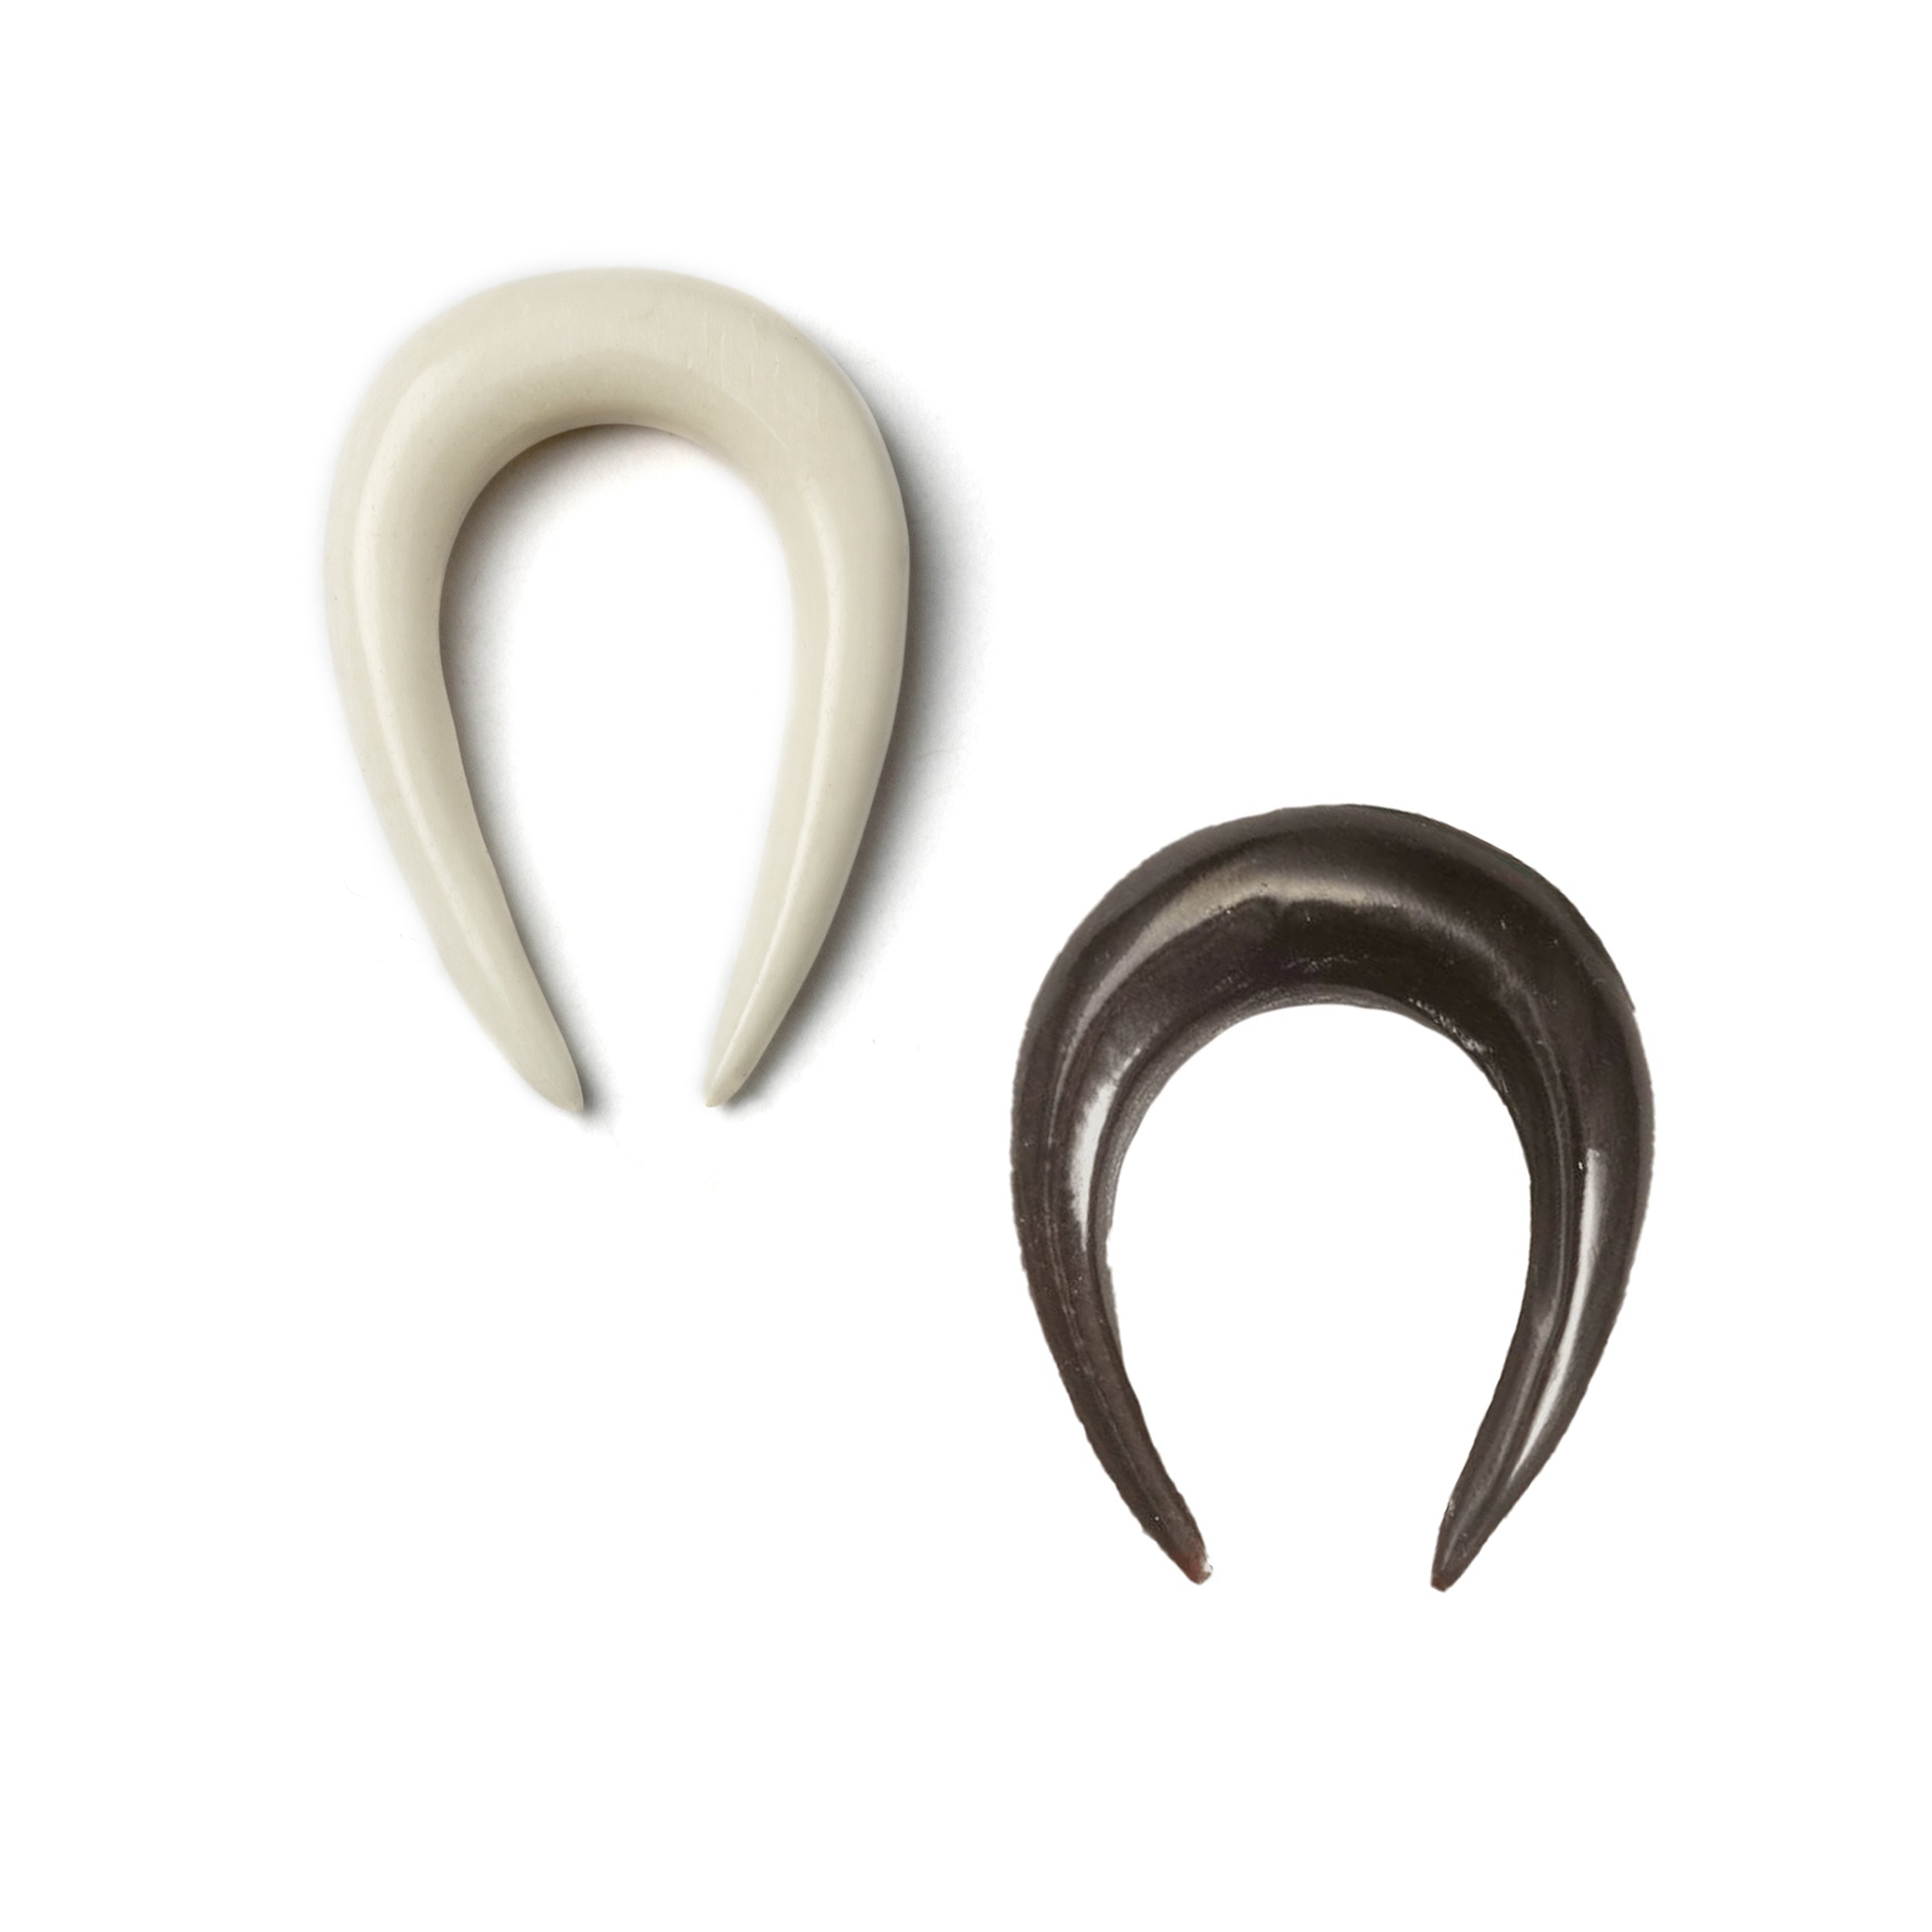 Horseshoe Ear Stretchers - Bone and Horn